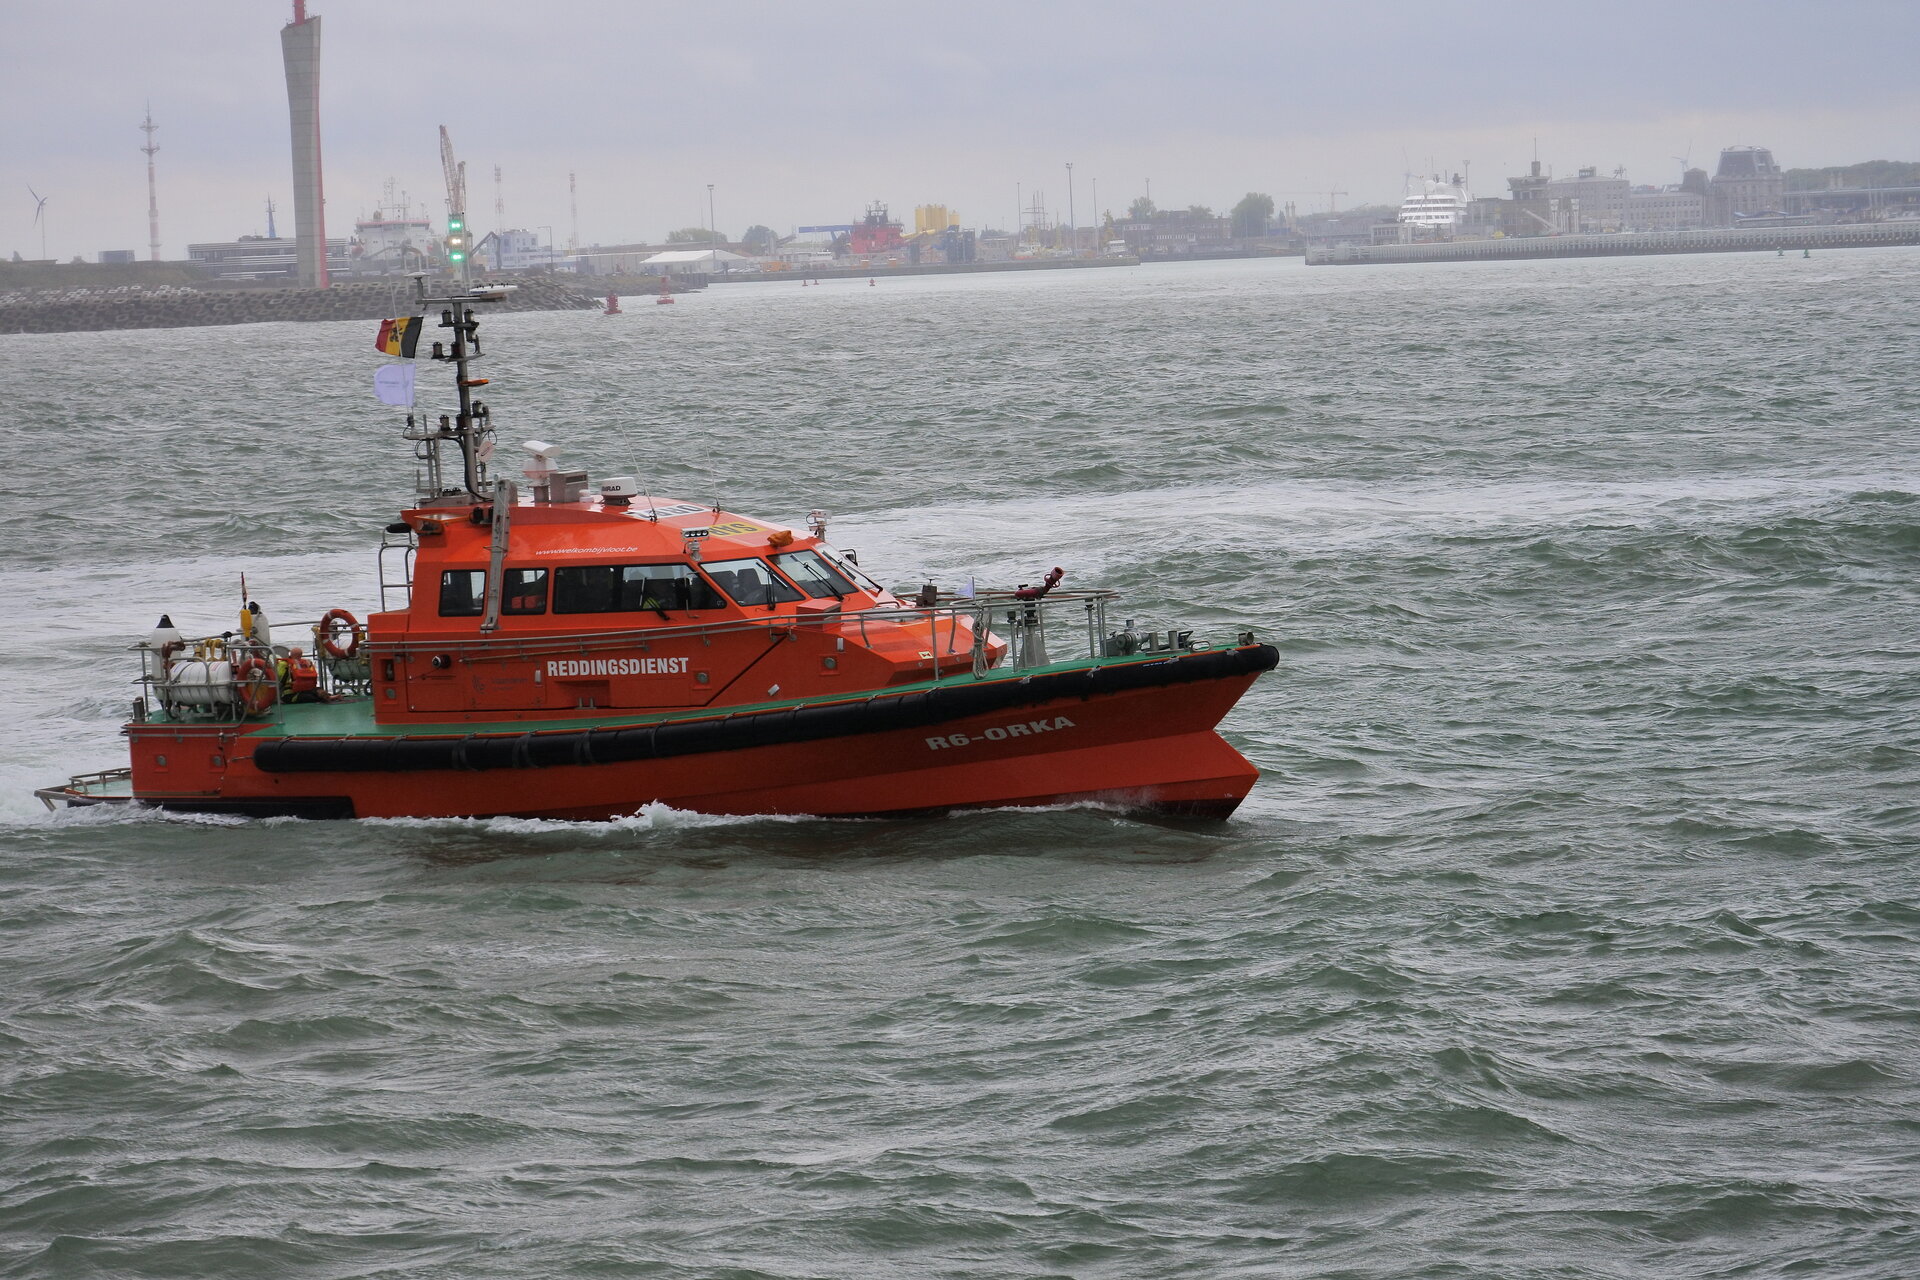 Rescue vessel